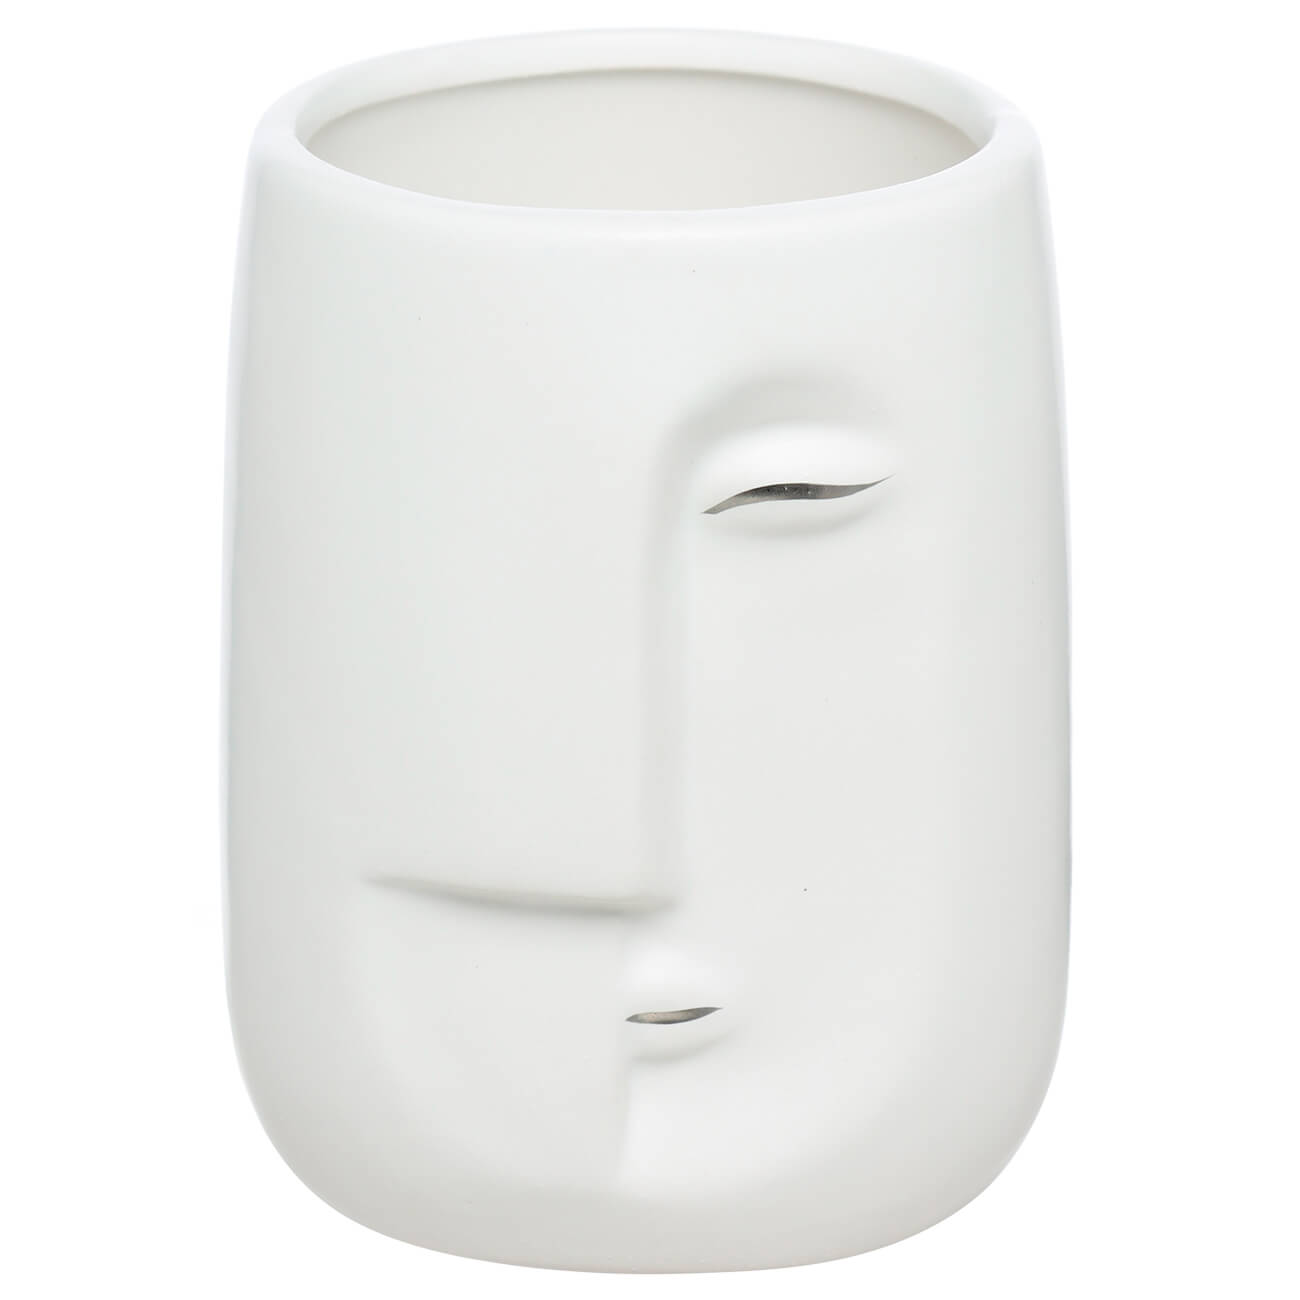 Стакан для ванной комнаты, 11 см, керамика, белый, Лицо, Face блюдо 24 см керамика белое лицо face